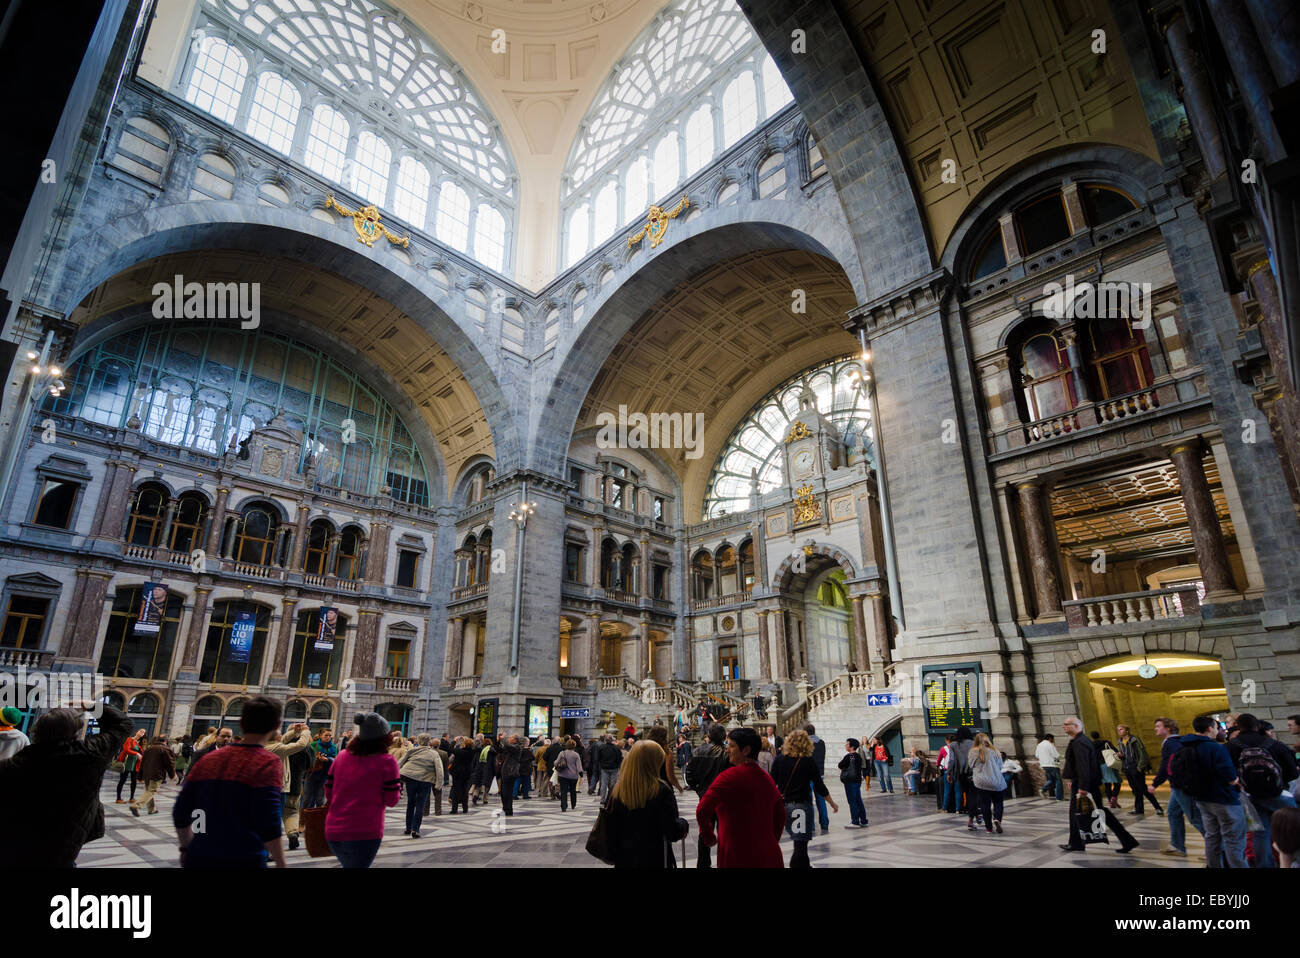 Antwerpen, Belgien - Oktober die Haupthalle der berühmten Antwerpener Bahn Bahnhof, auch bekannt als die Kathedrale unter statio Stockfoto